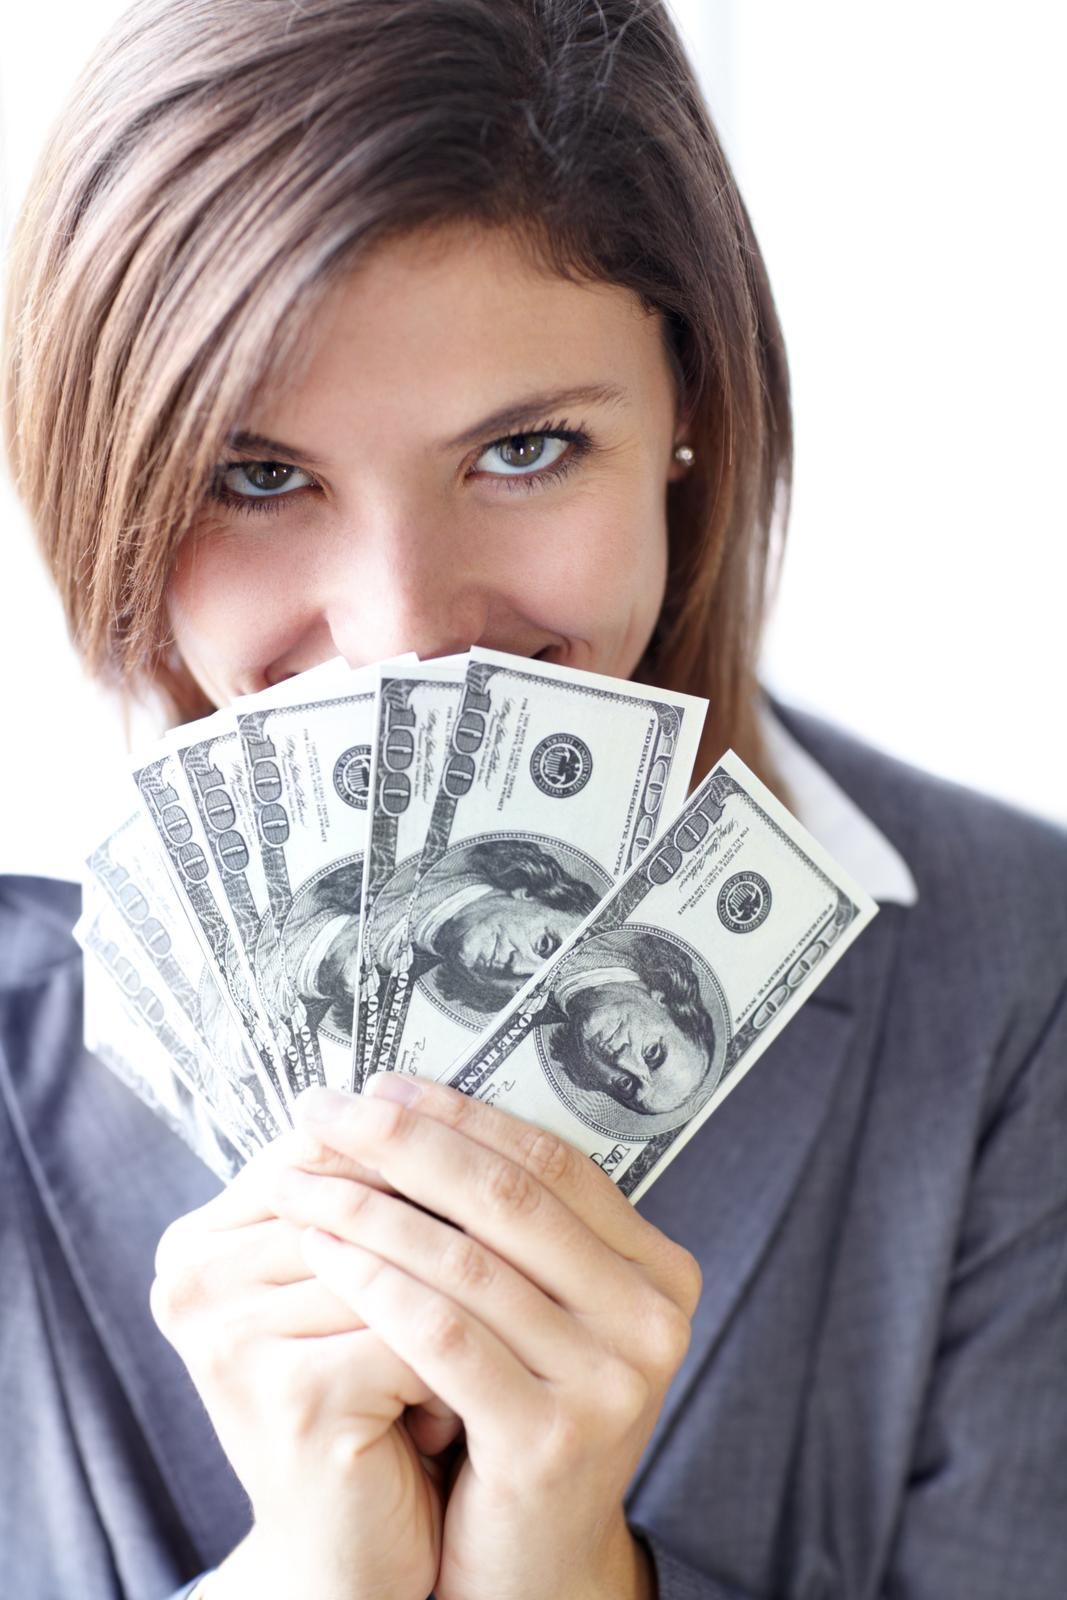 Junge Frau versteckt grinsend ihr Gesicht hinter einigen 100 US-Dollar Noten